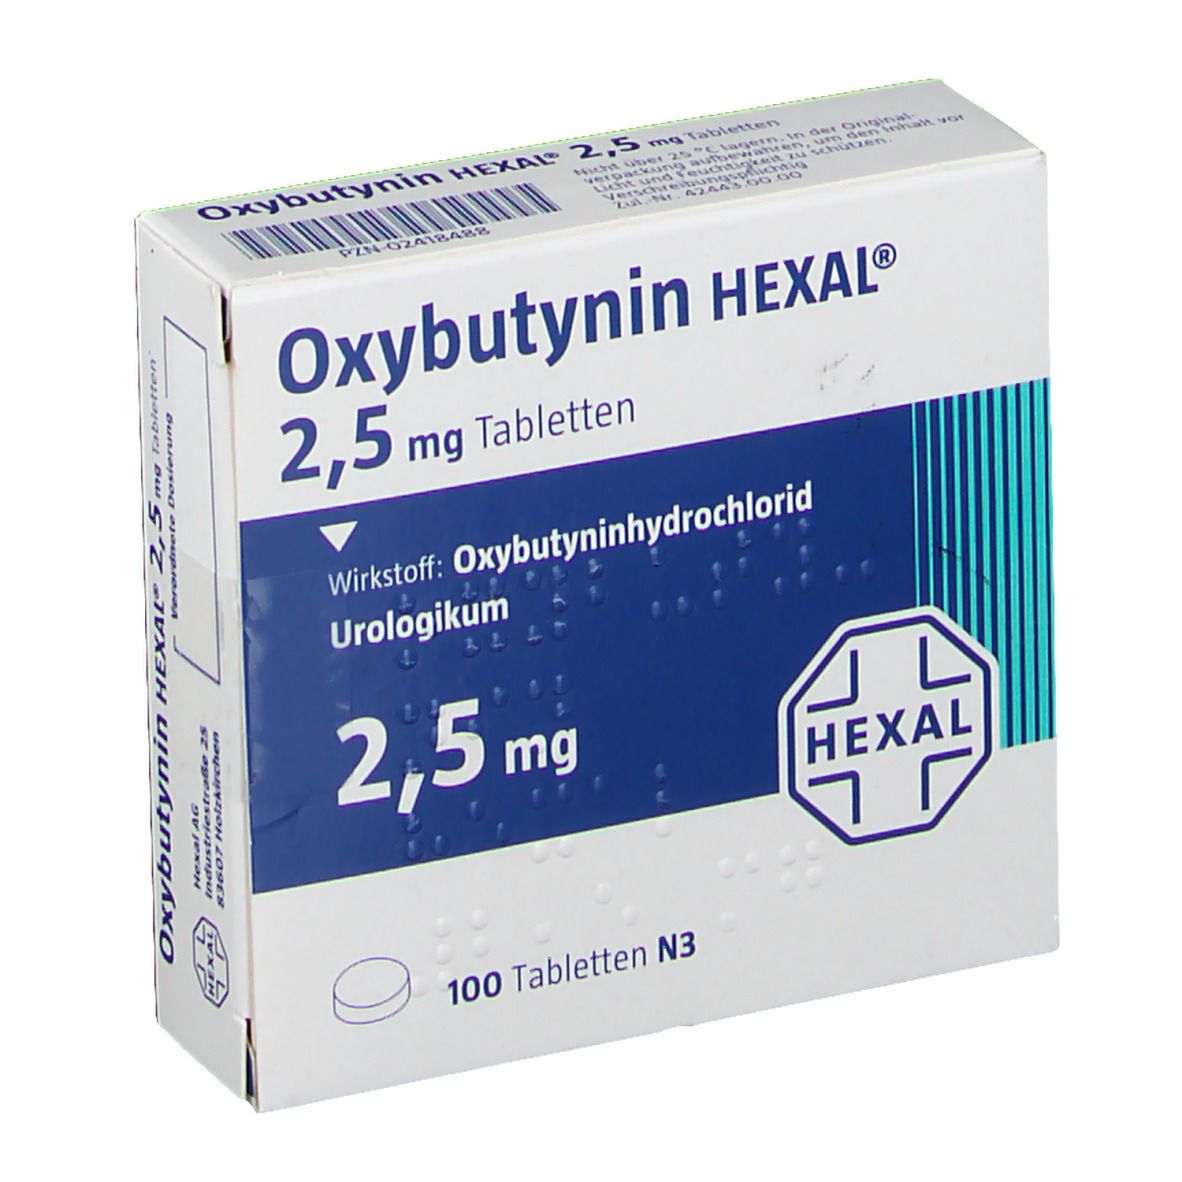 Oxybutynin HEXAL® 2,5 mg